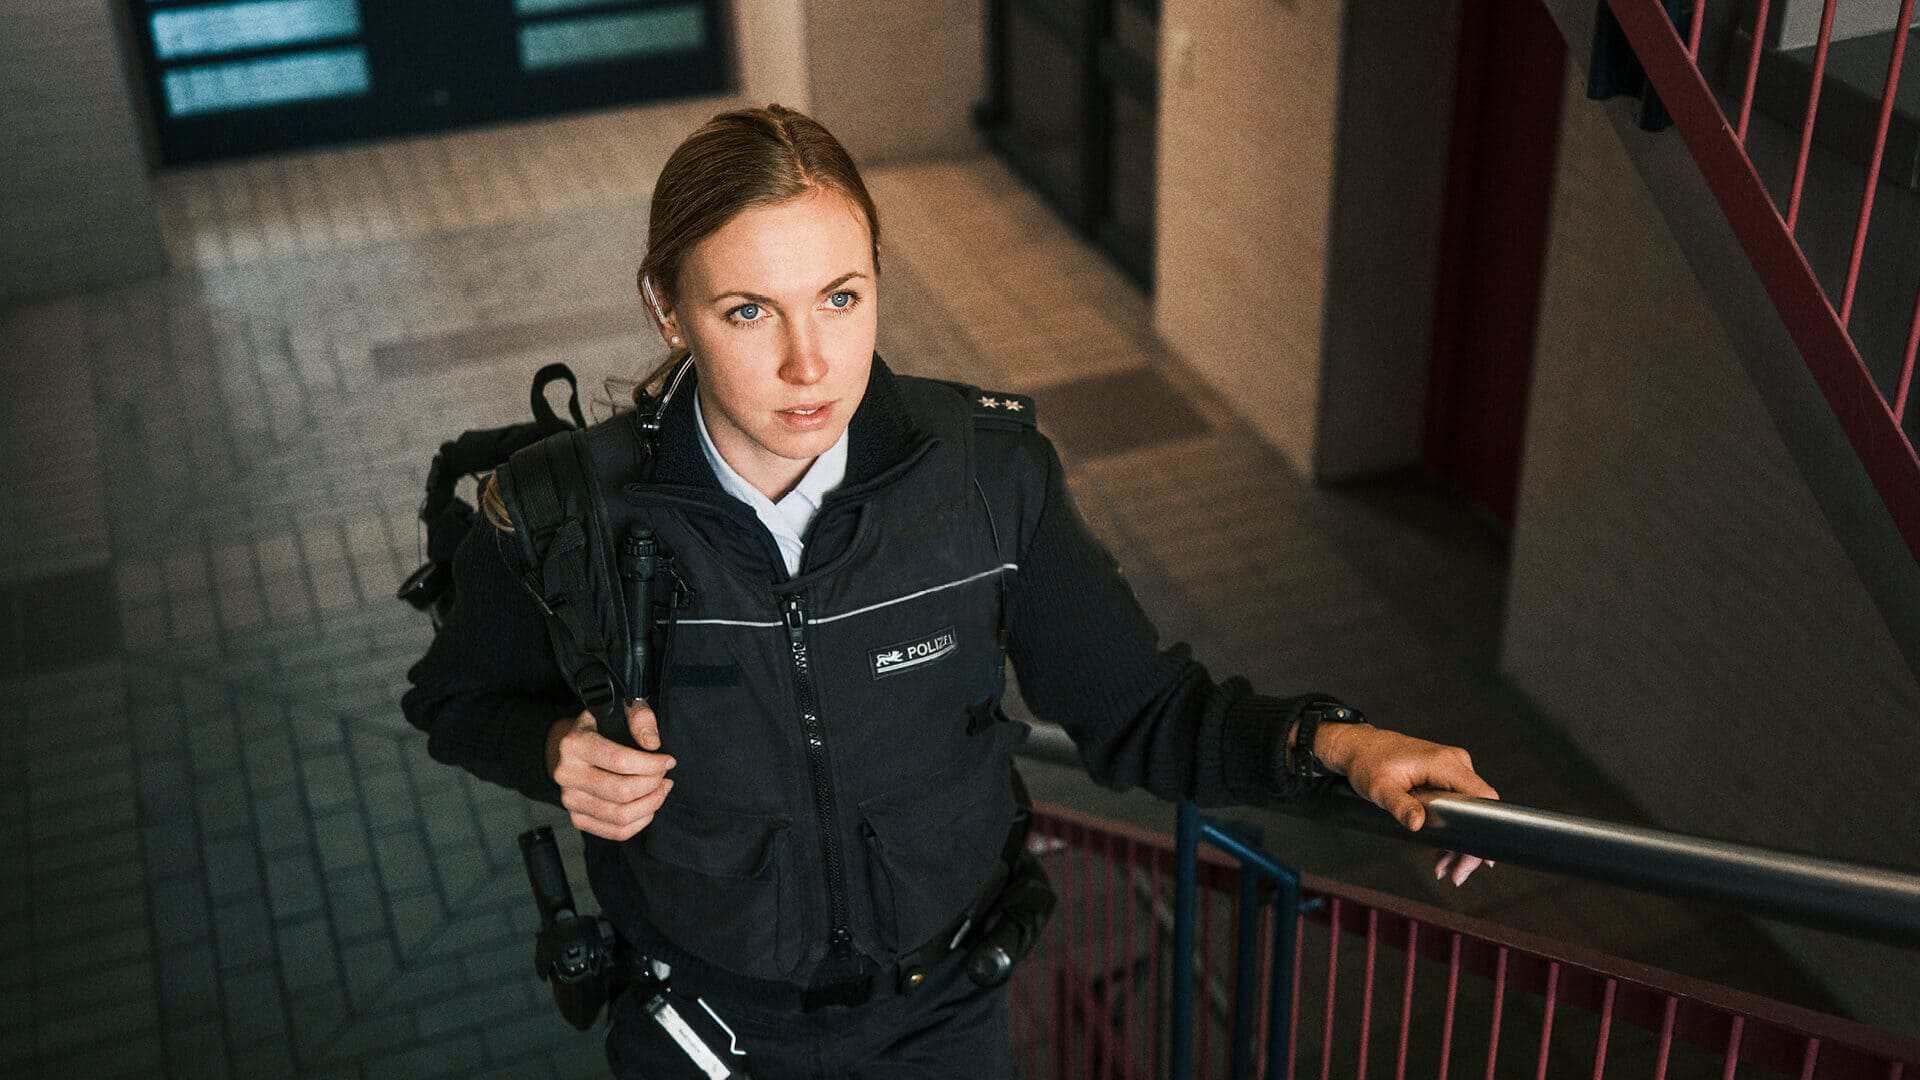 Bild von Polizistin Vivien in Uniform, die einen Rucksack über der Schulter trägt und eine Treppe hochgeht.